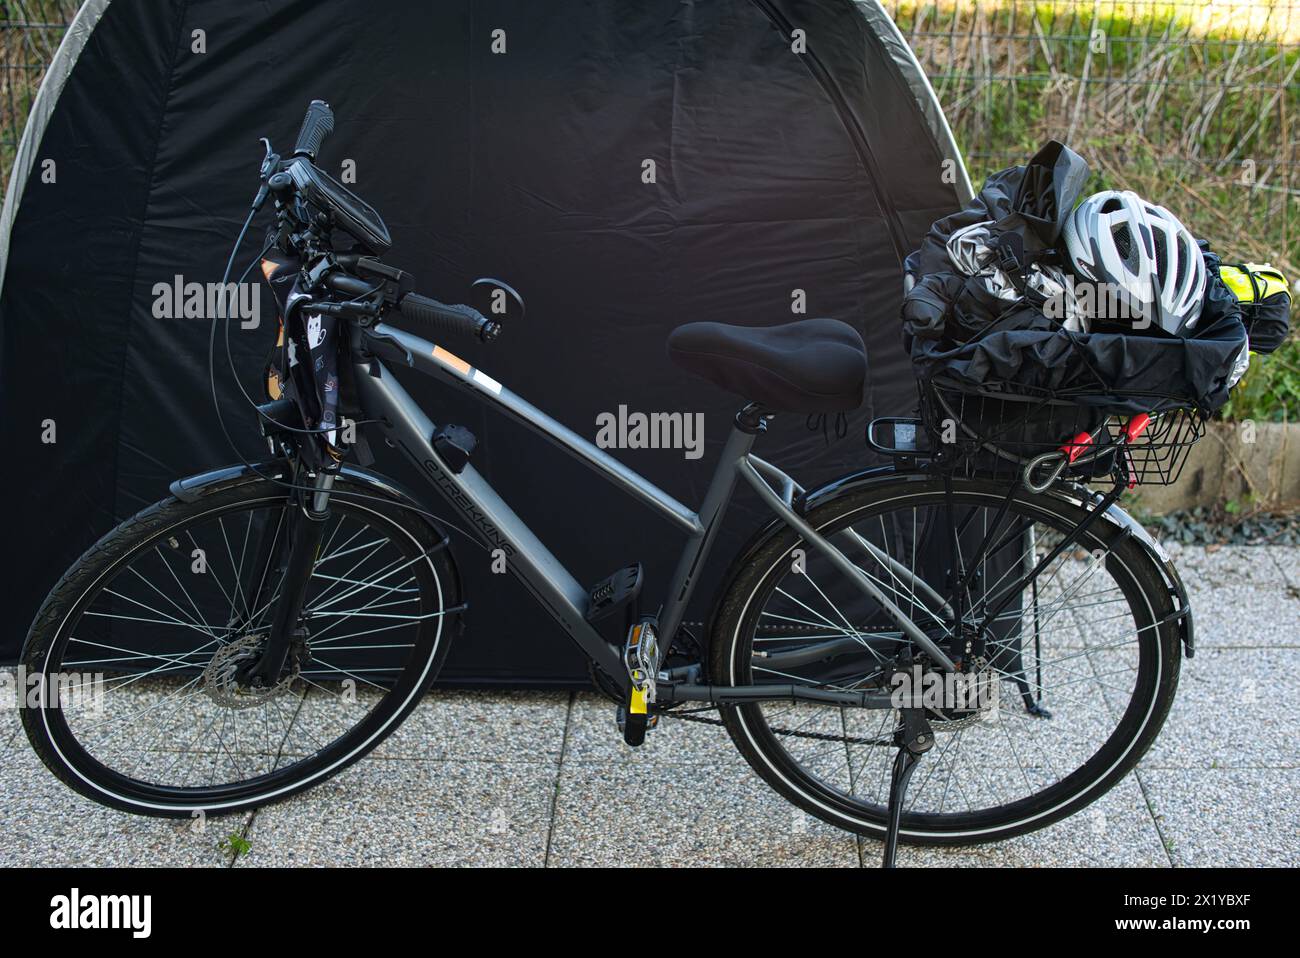 Bicicletta elettrica con portabagagli posizionato di fronte a una tenda per biciclette. Vari oggetti come un casco da bicicletta, giubbotto riflettente e copertura antipioggia Foto Stock